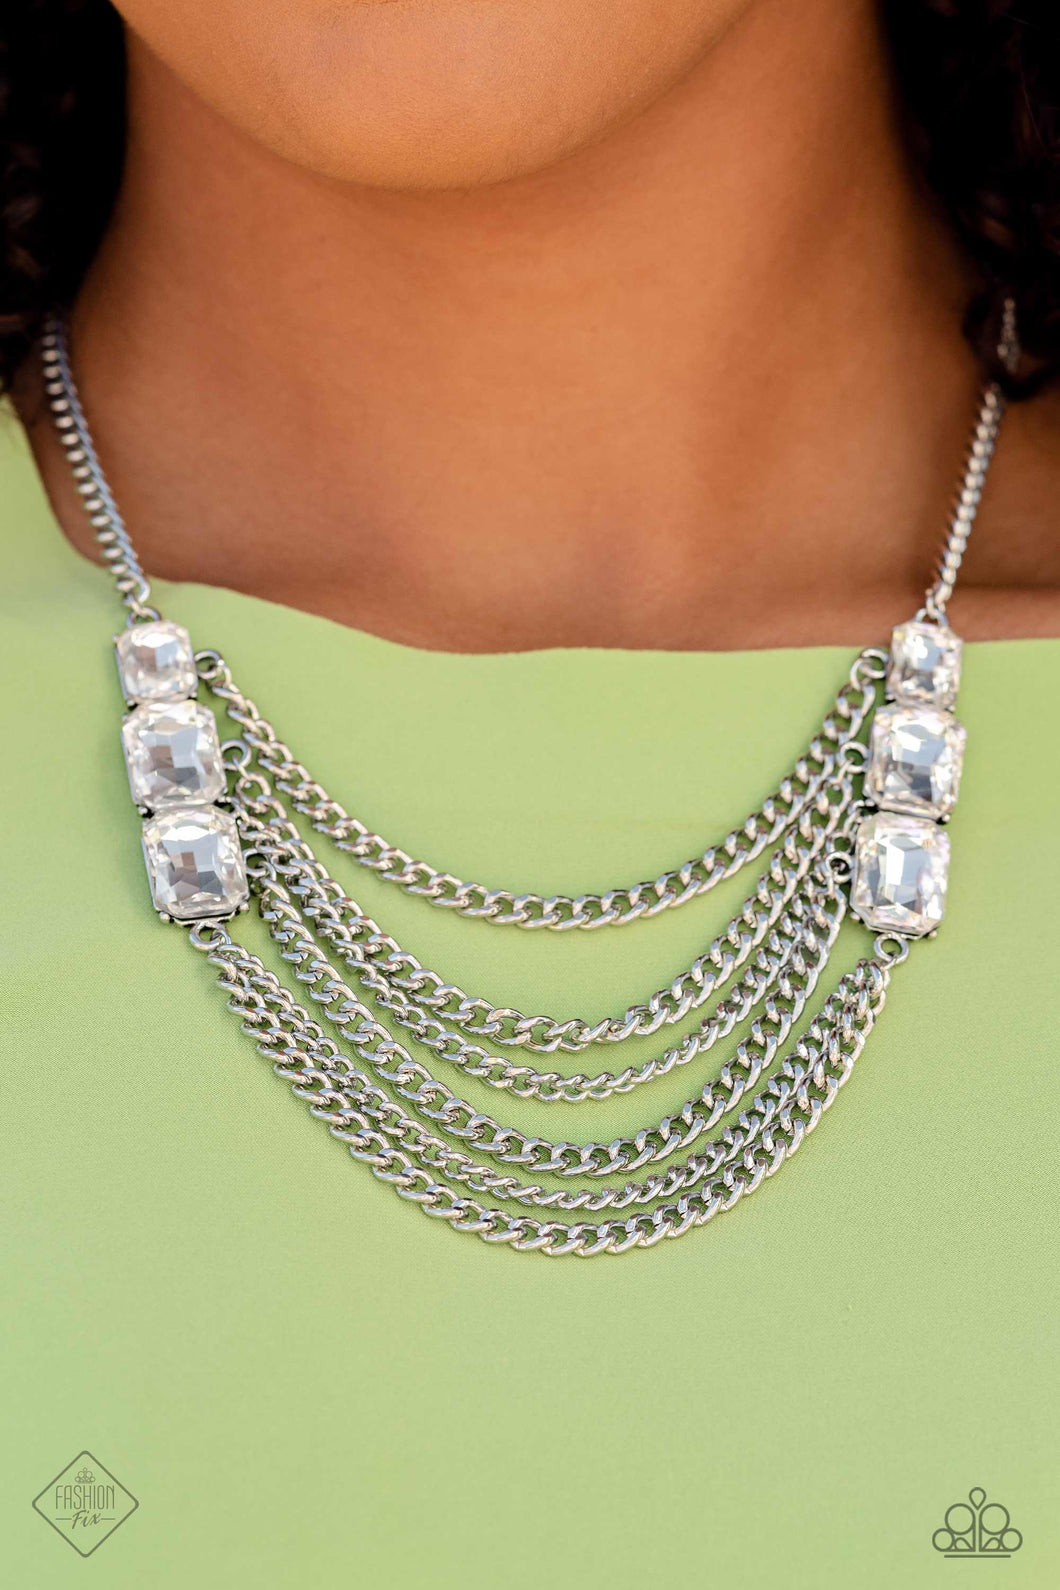 Come Chain or Shine White Rhinestone Necklace Paparazzi Accessories